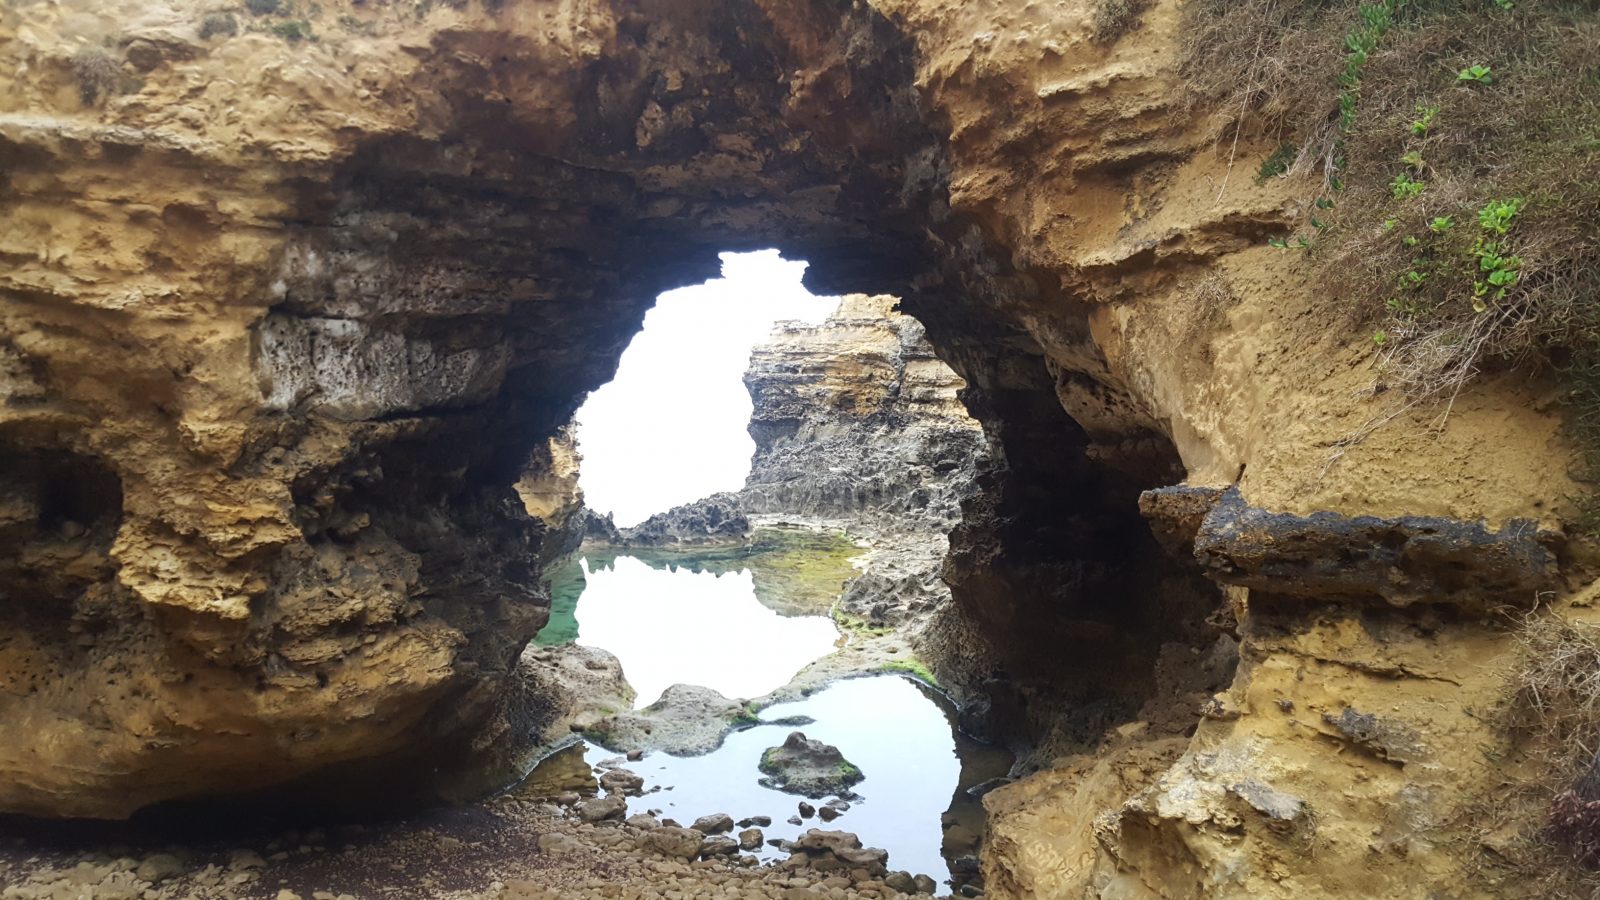 The Grotto entrée